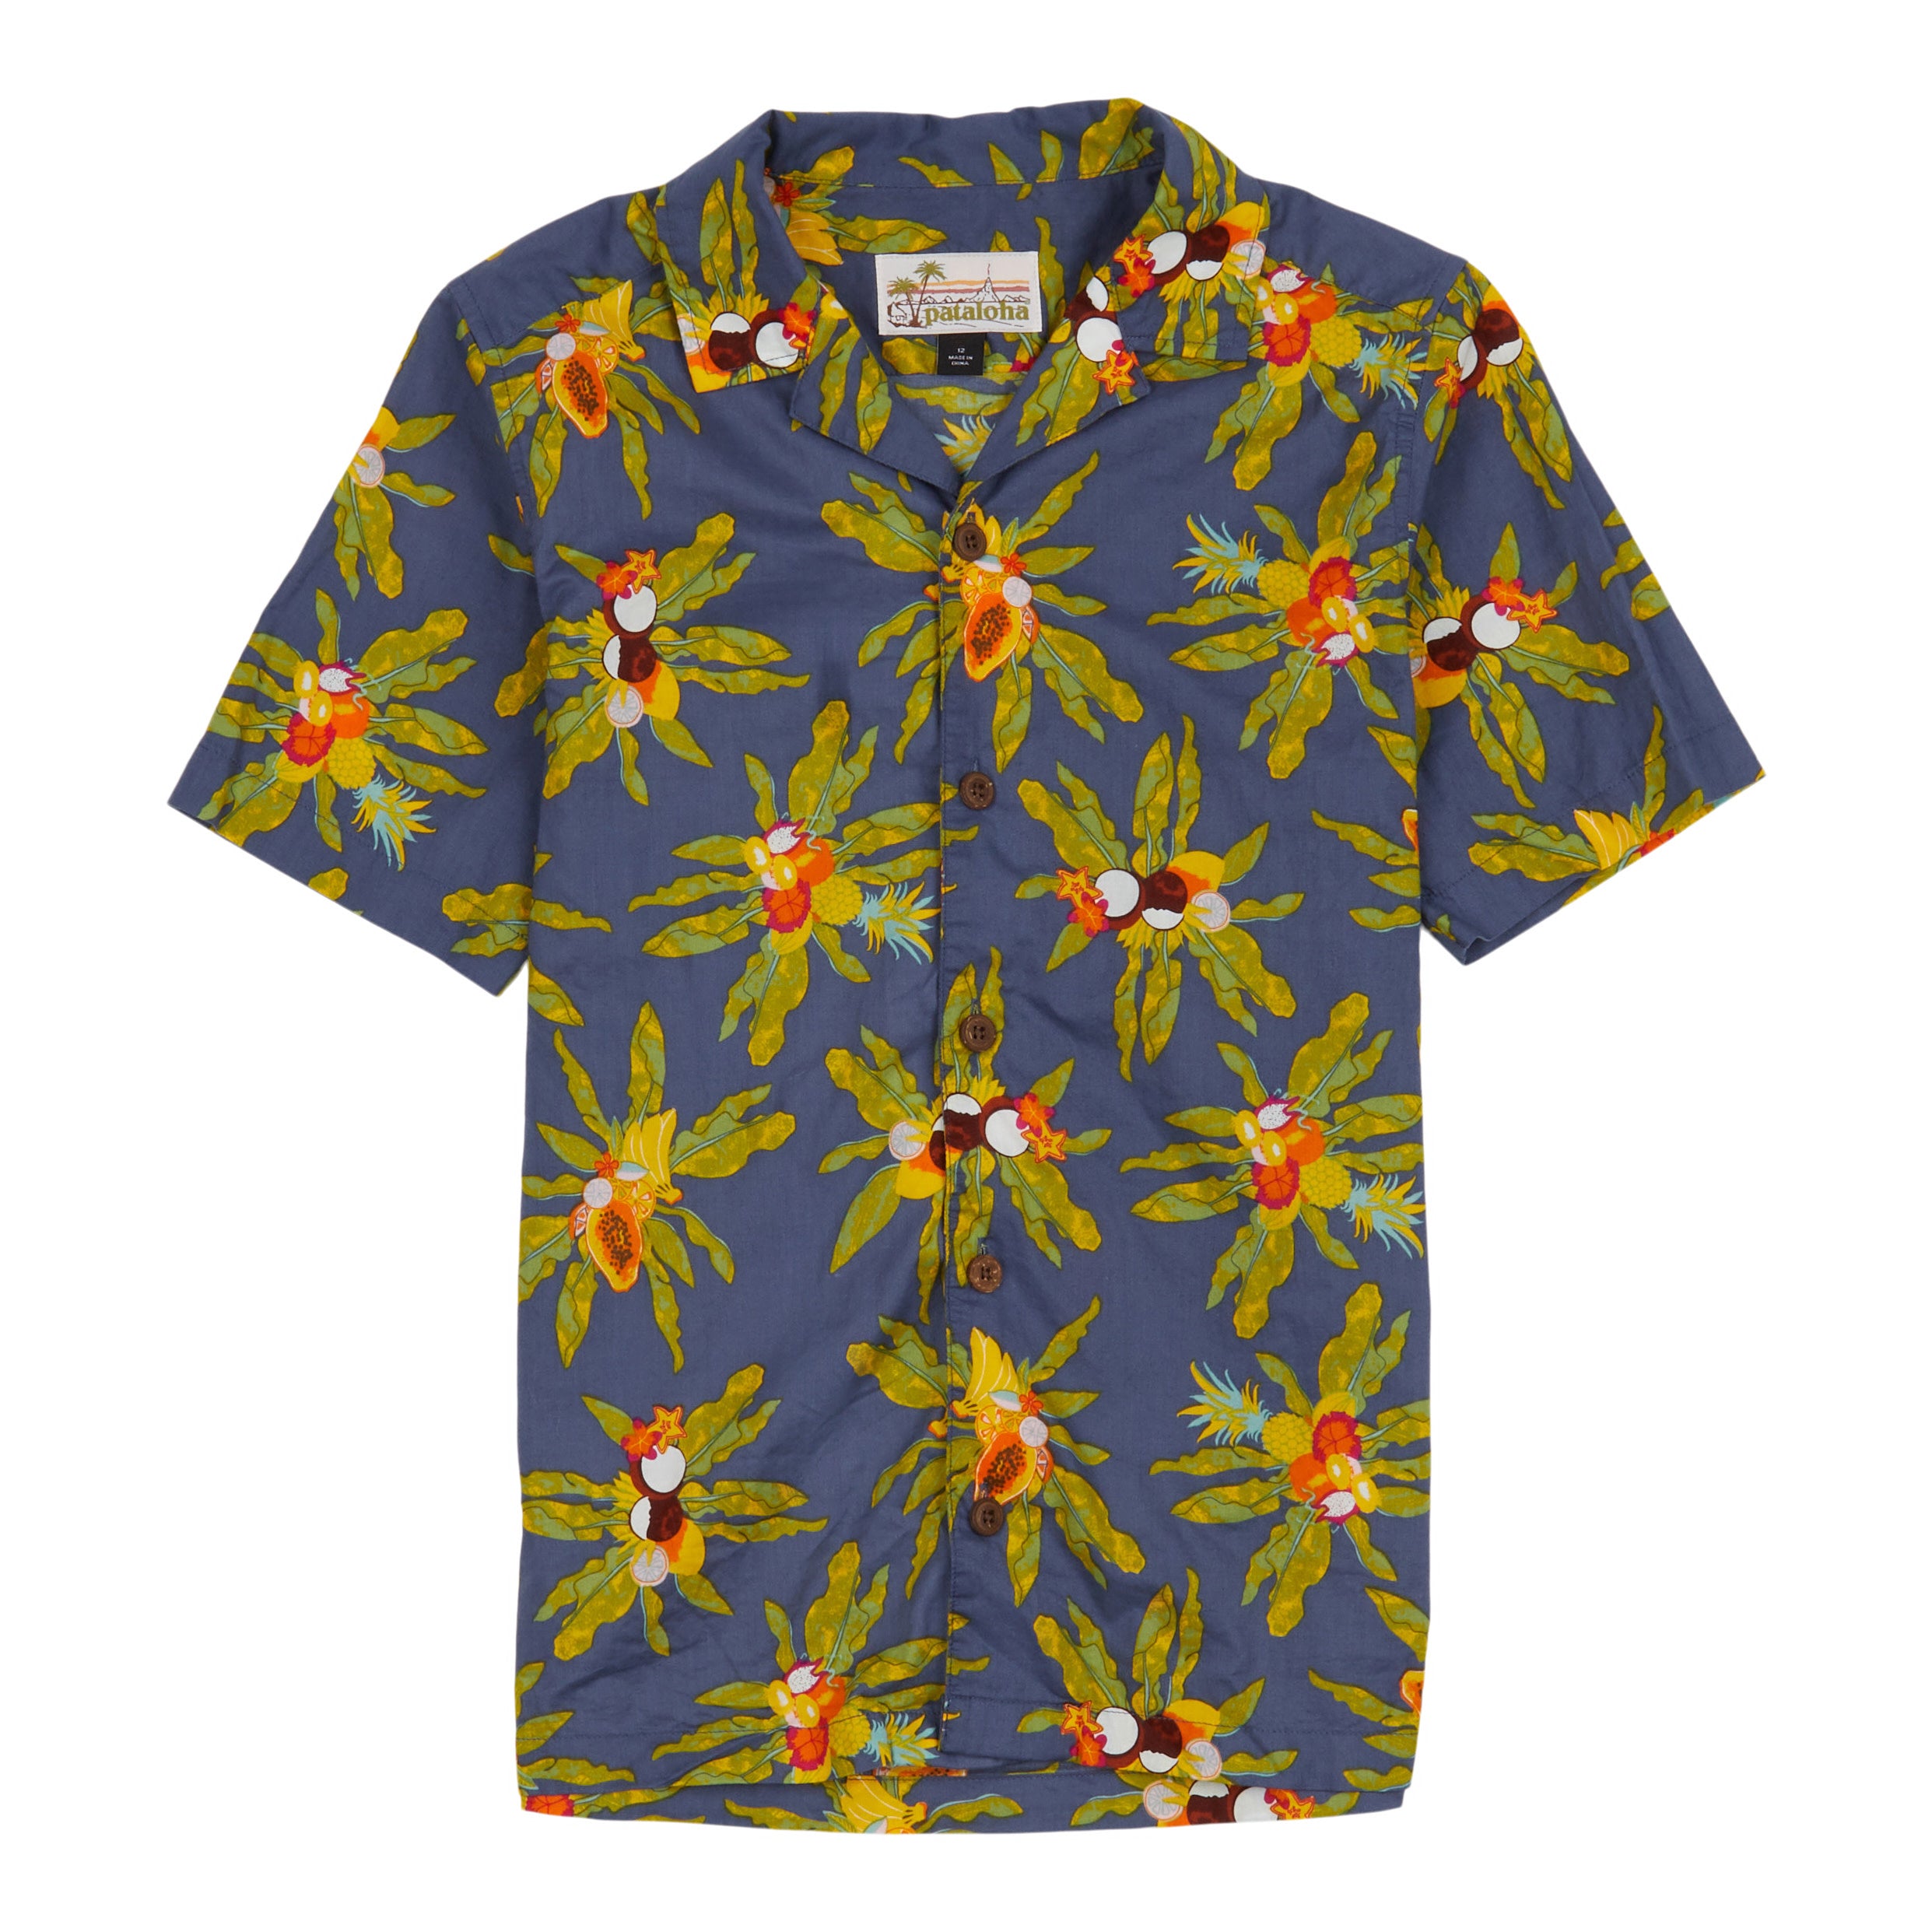 Men's Pataloha® Shirt – Patagonia Worn Wear